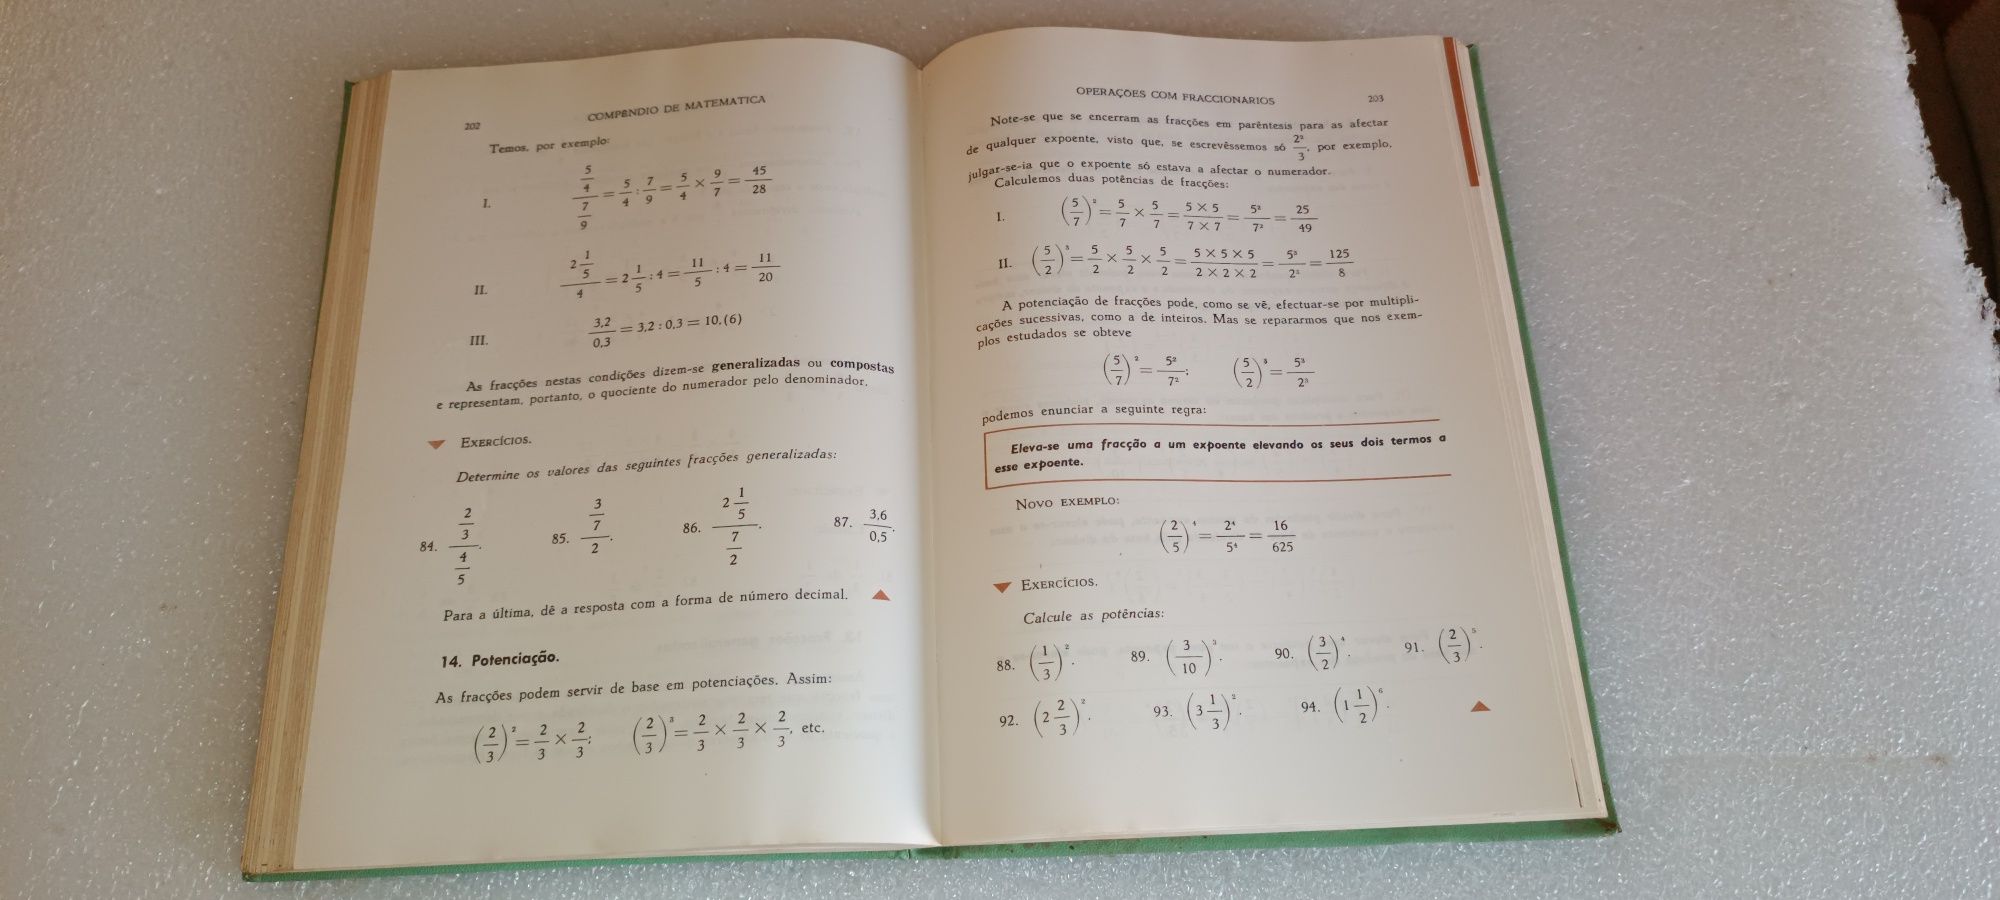 Antigo Livro Compêndio de matemática - 2º ano do curso liceal 1966